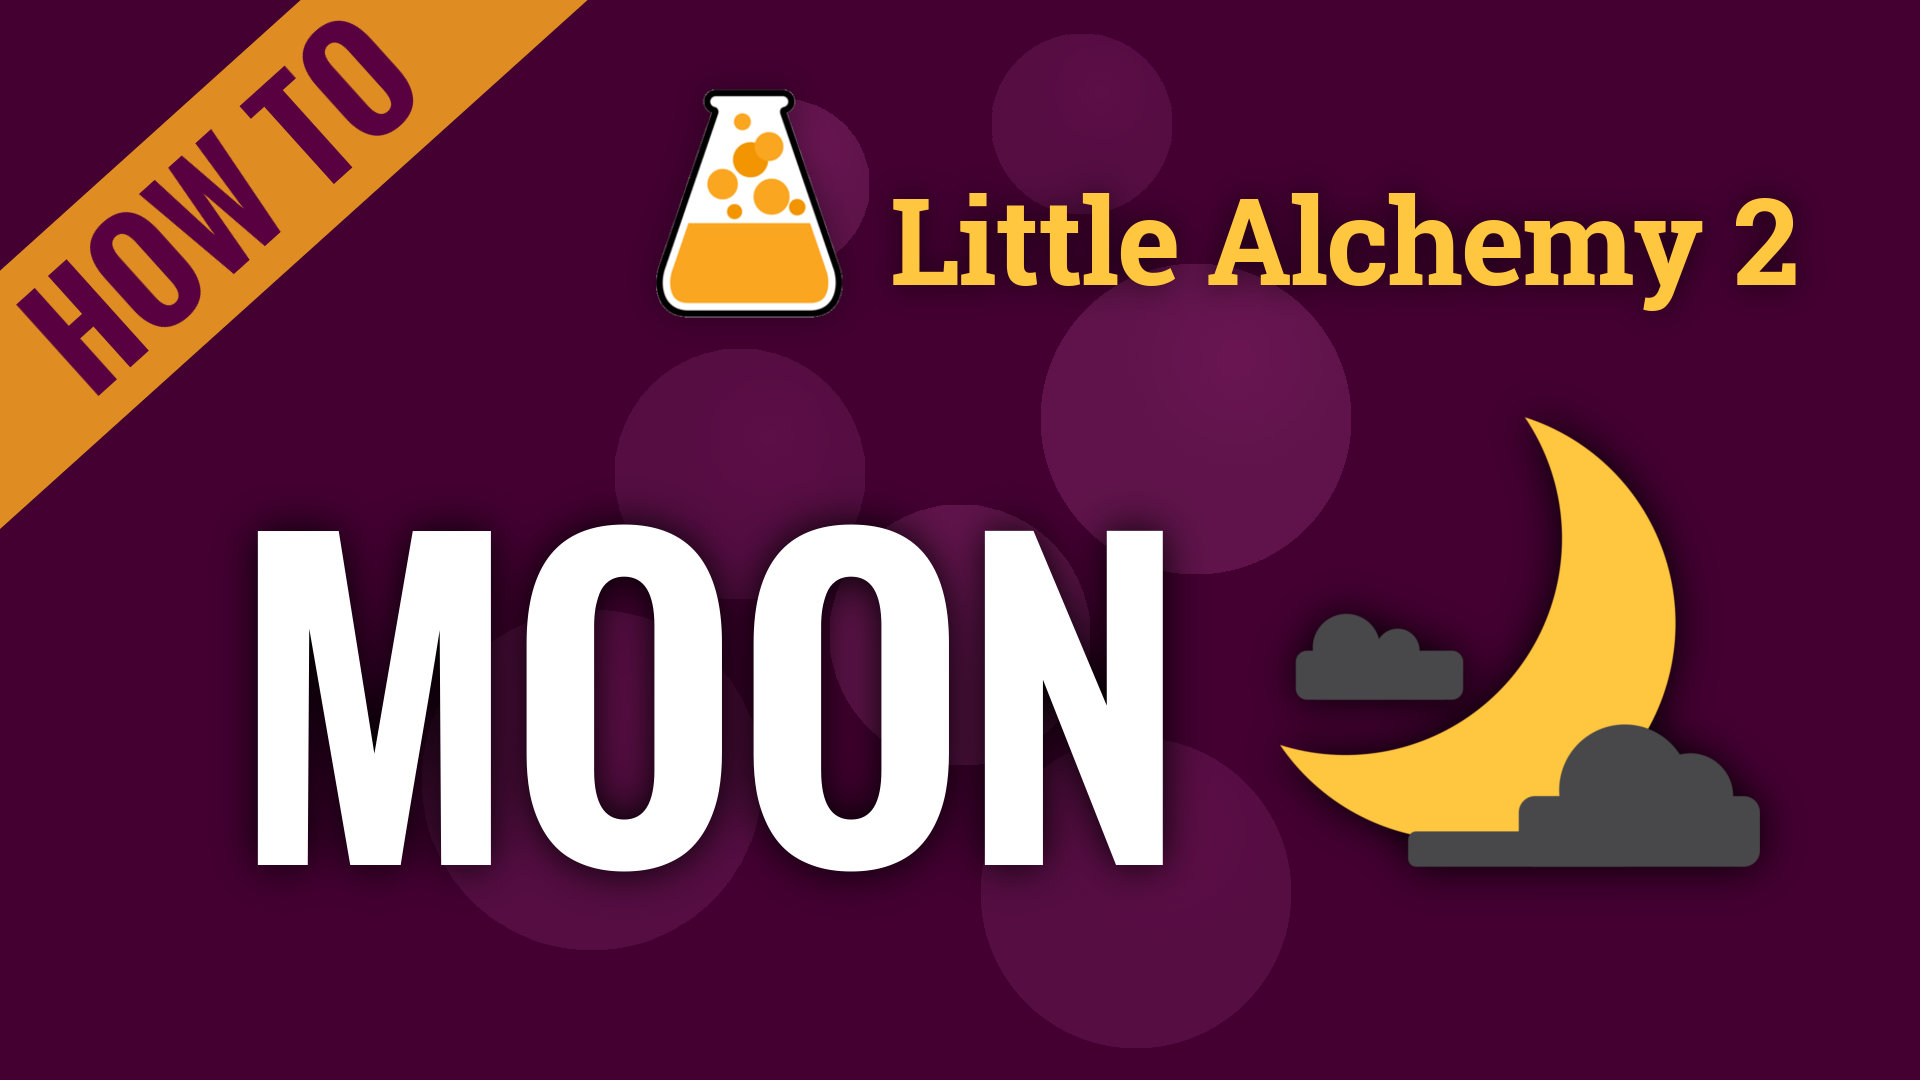 Little Alchemy Mond